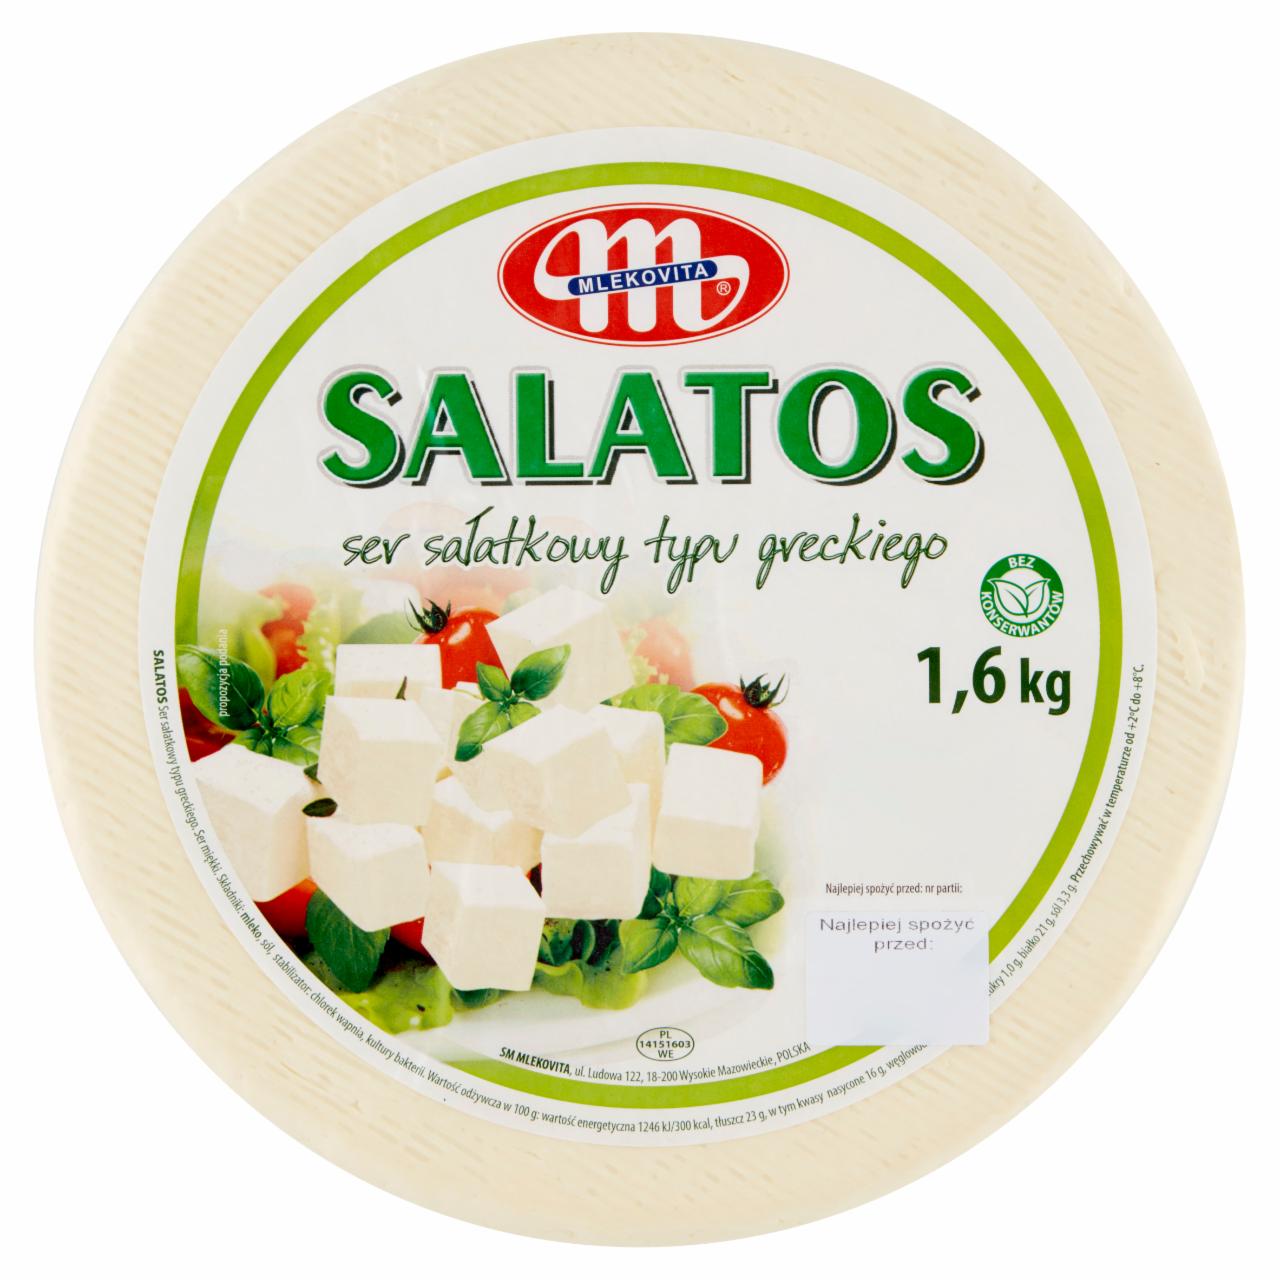 Fotografie - salatos family šalátový syr gréckeho typu